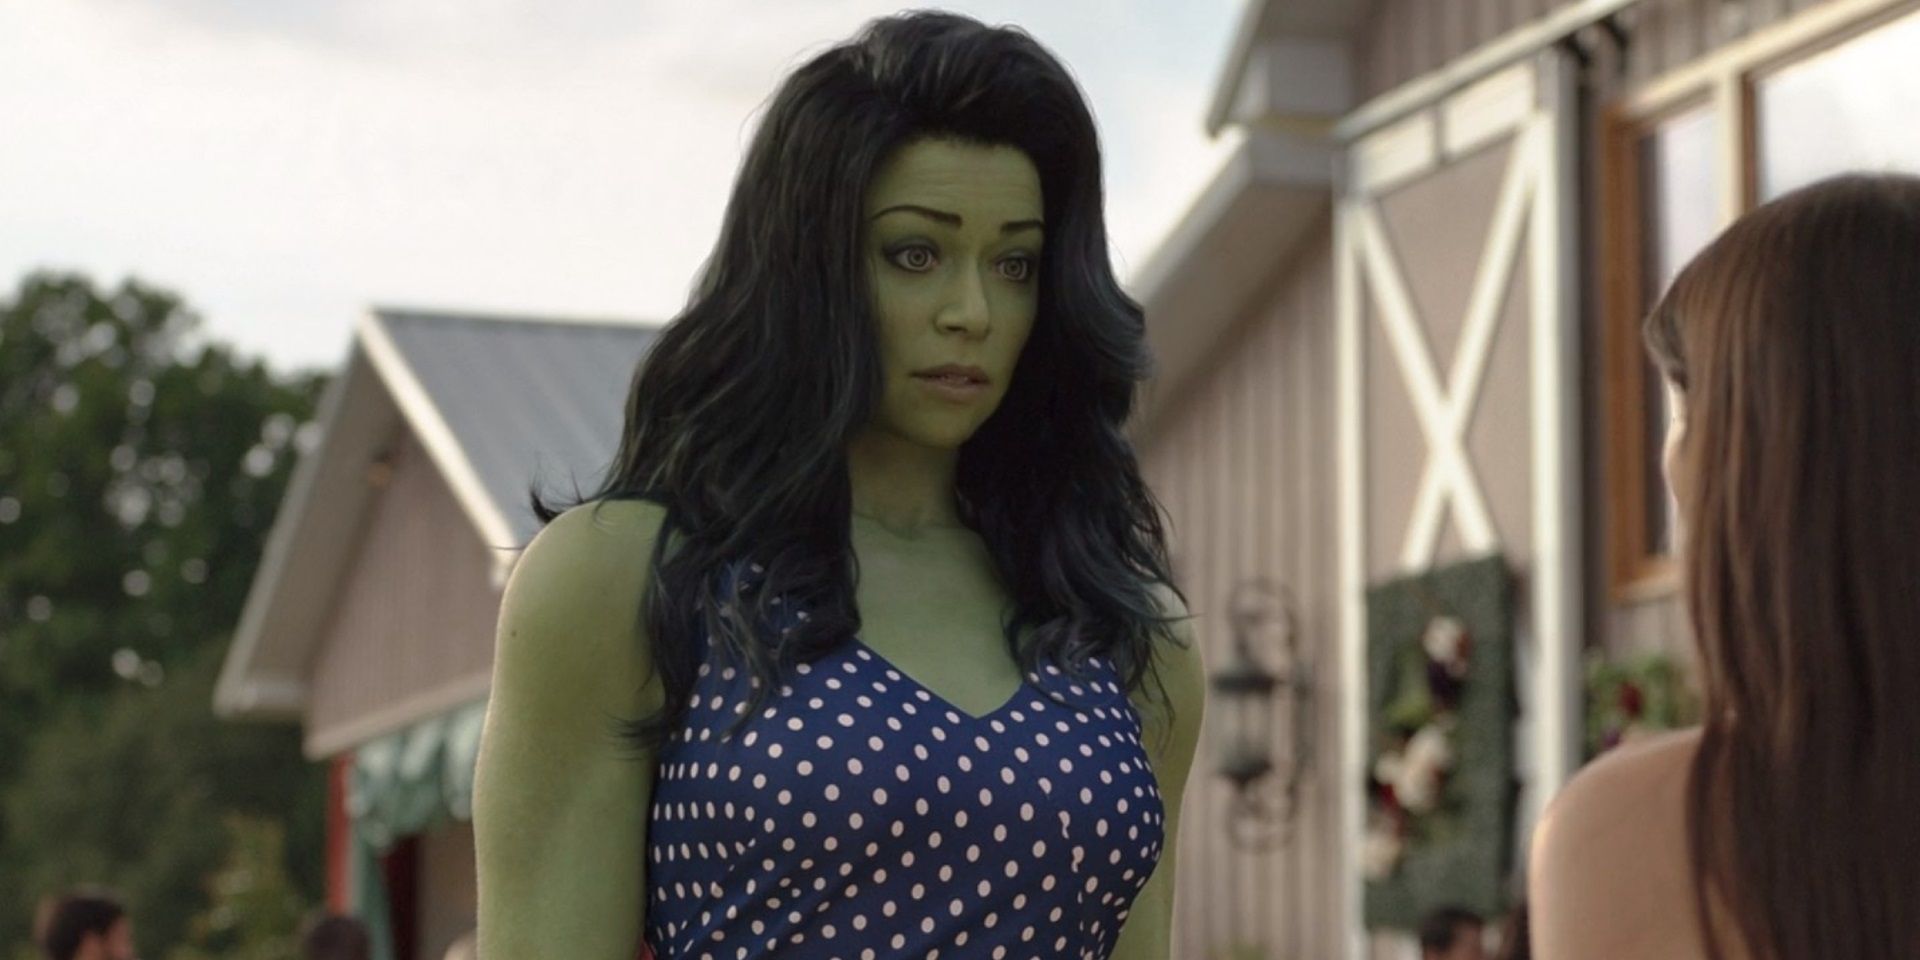 Jen at a wedding in She-Hulk form in She-Hulk episode 6